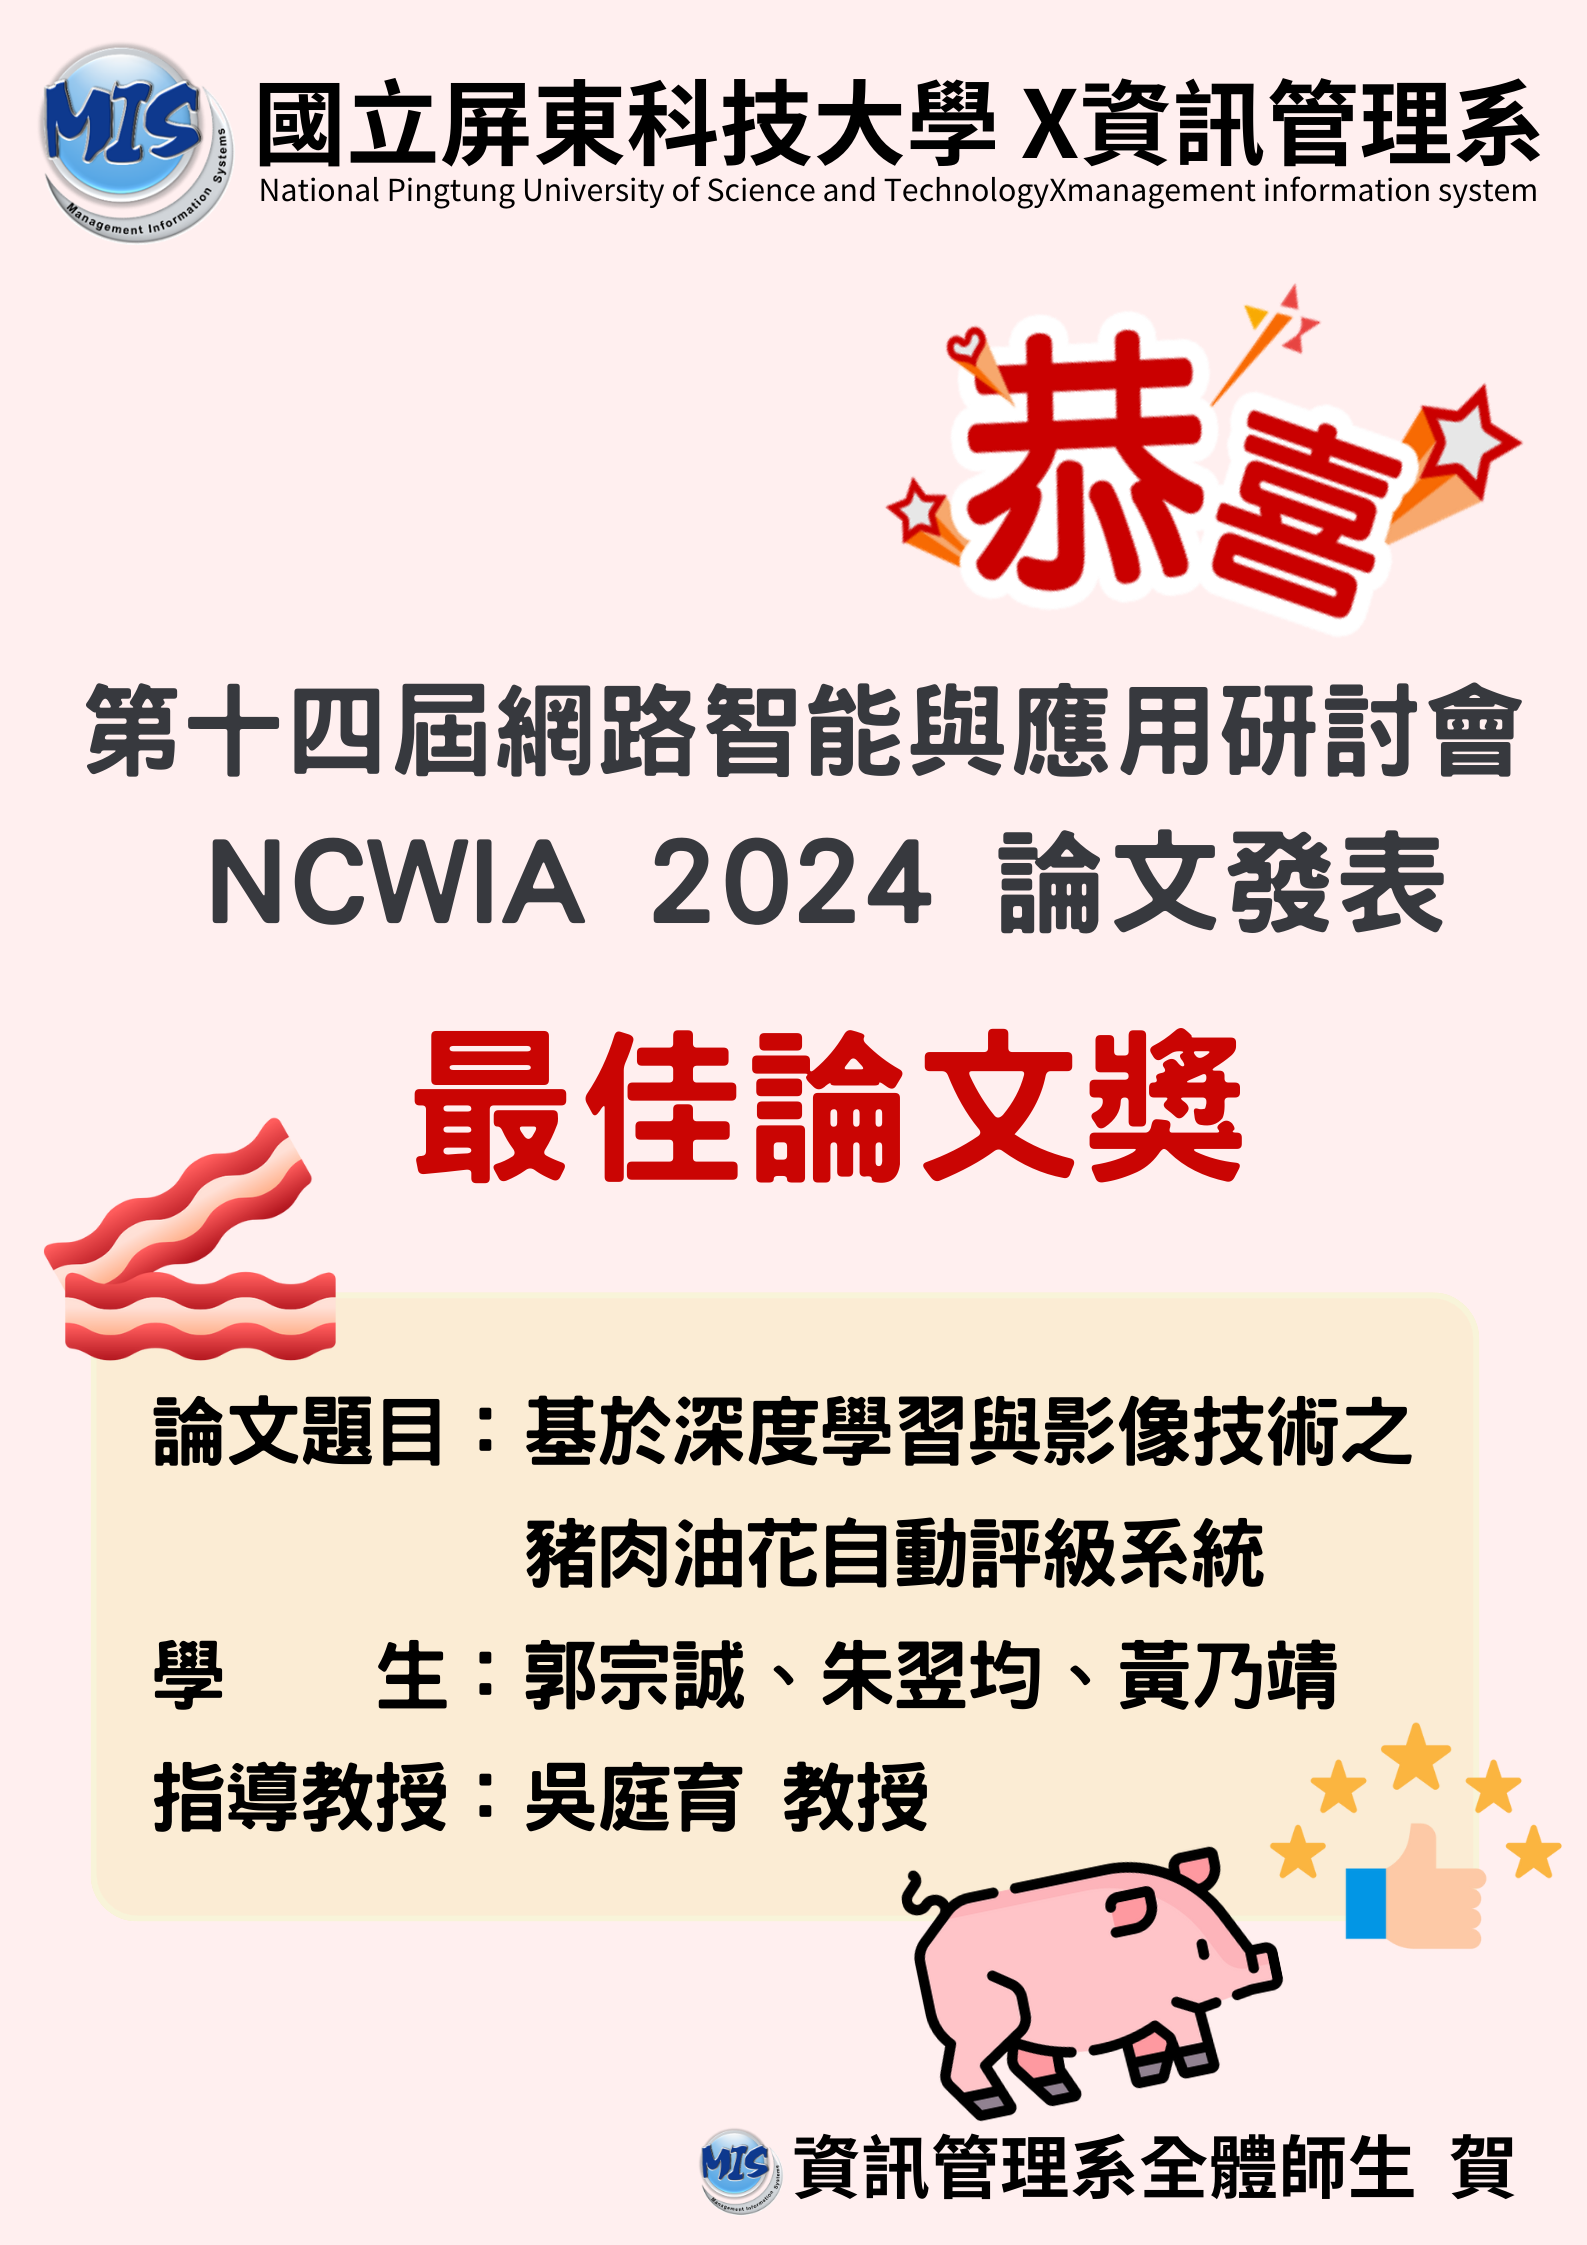 1130716_第十四屆網路智能與應用研討會-NCWIA-2024-論文發表-最佳論文獎-2